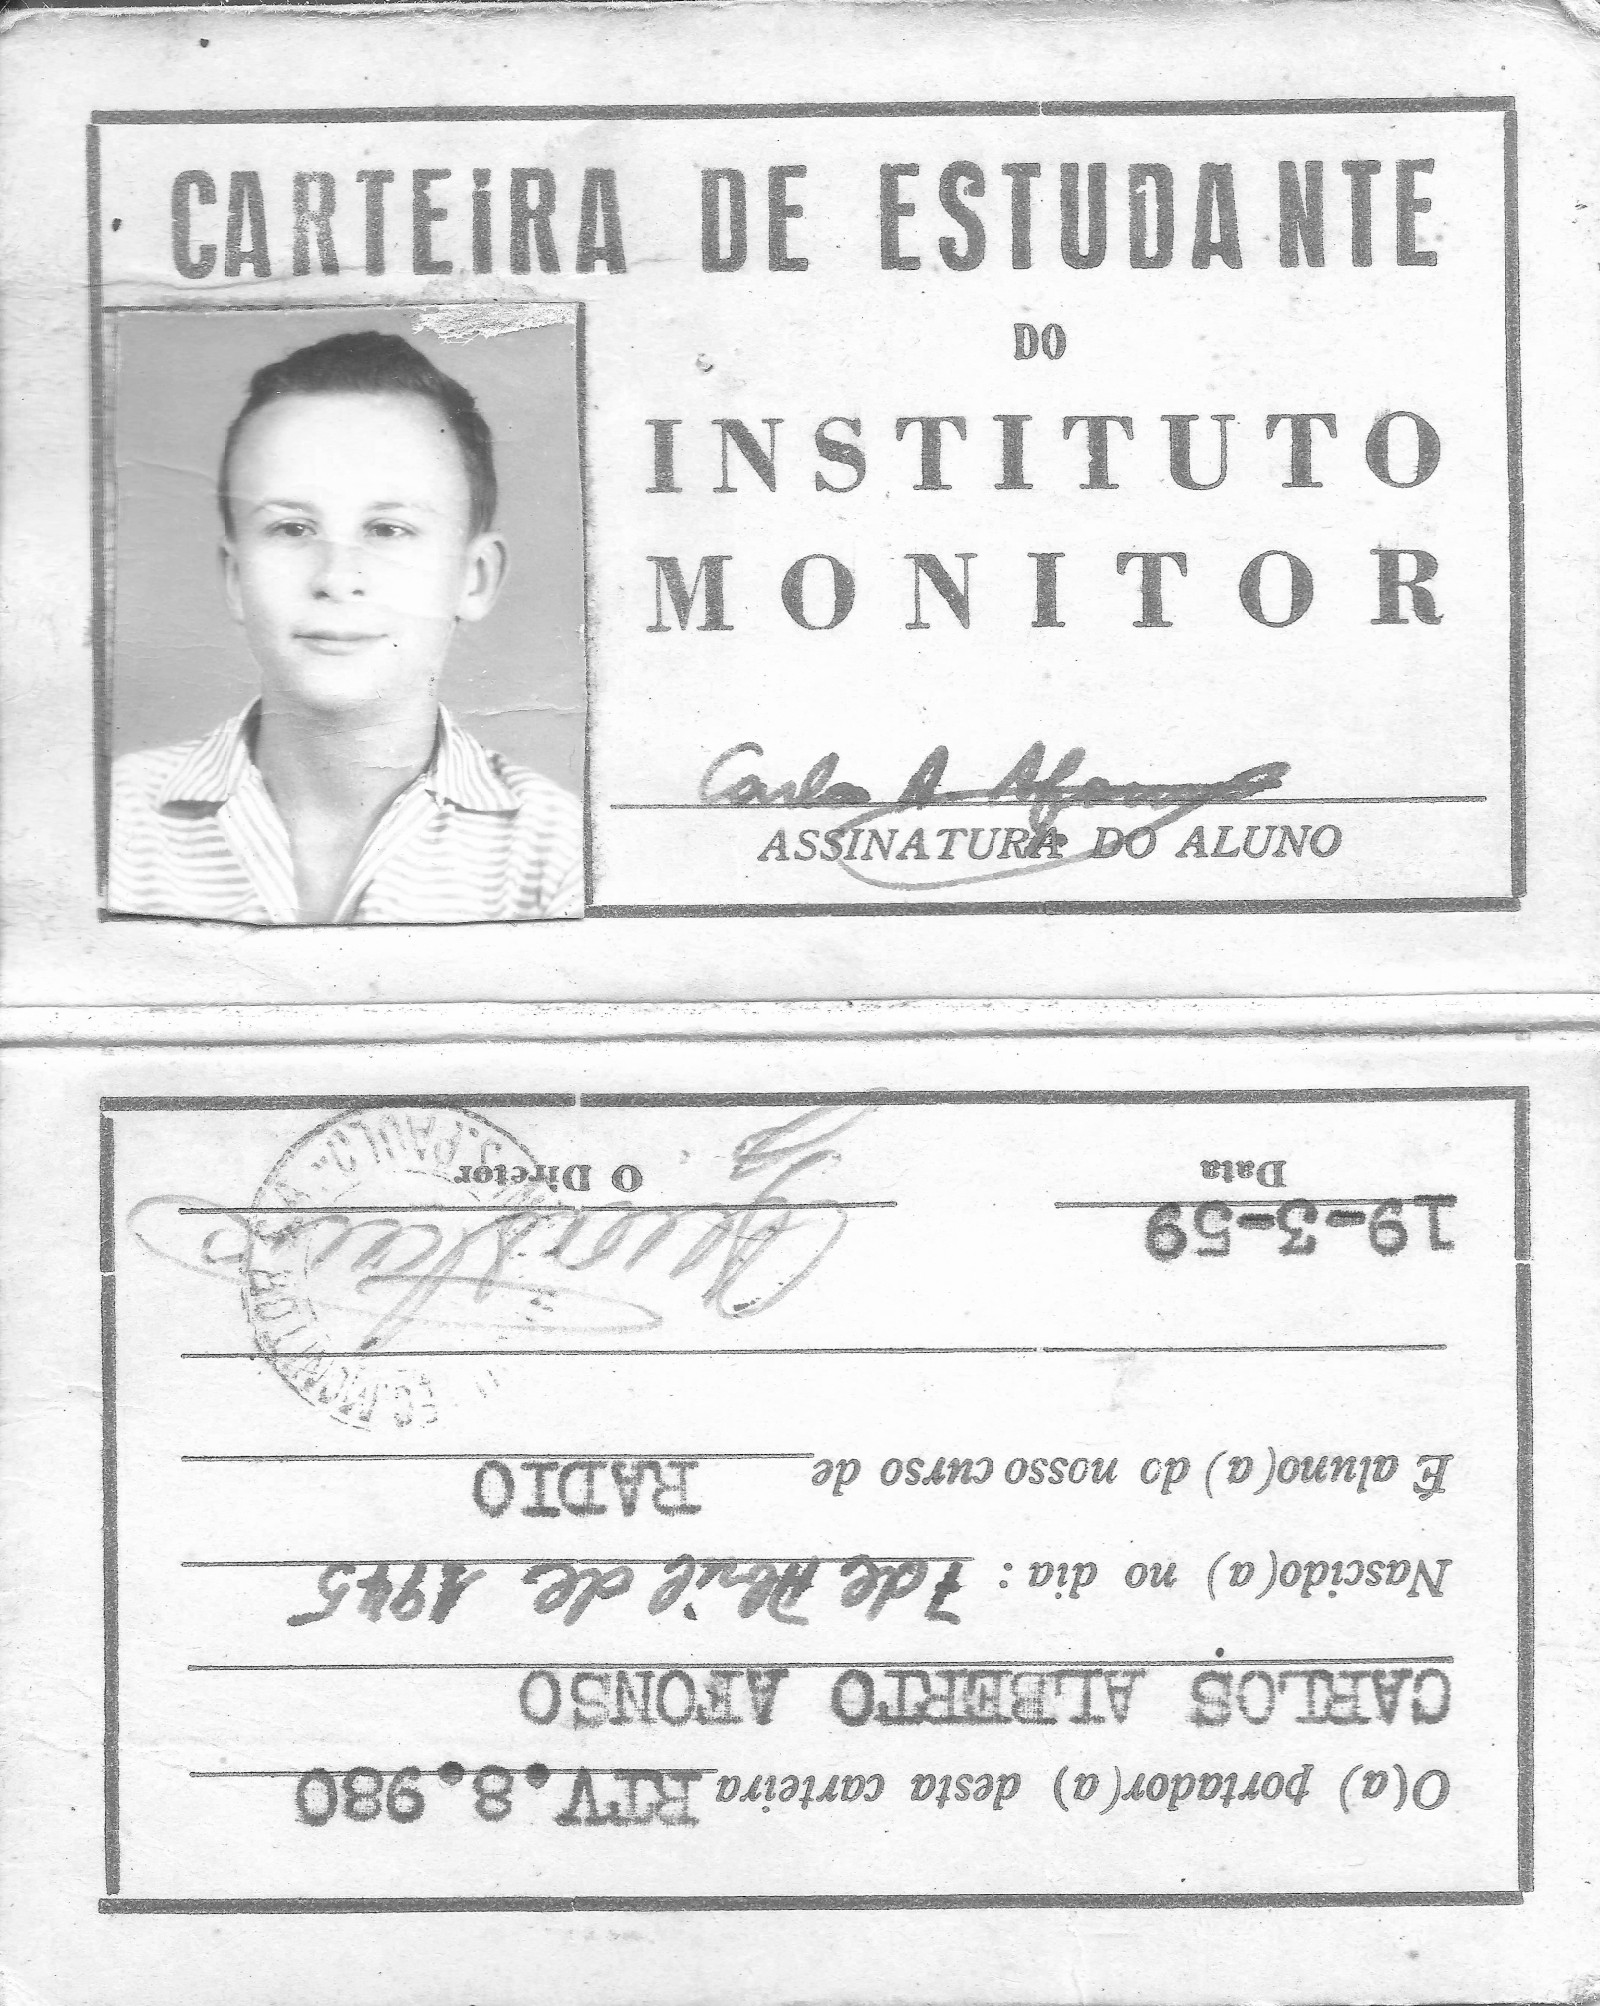 Carteira de estudante de técnico de rádio de Carlos Afonso, de 1959